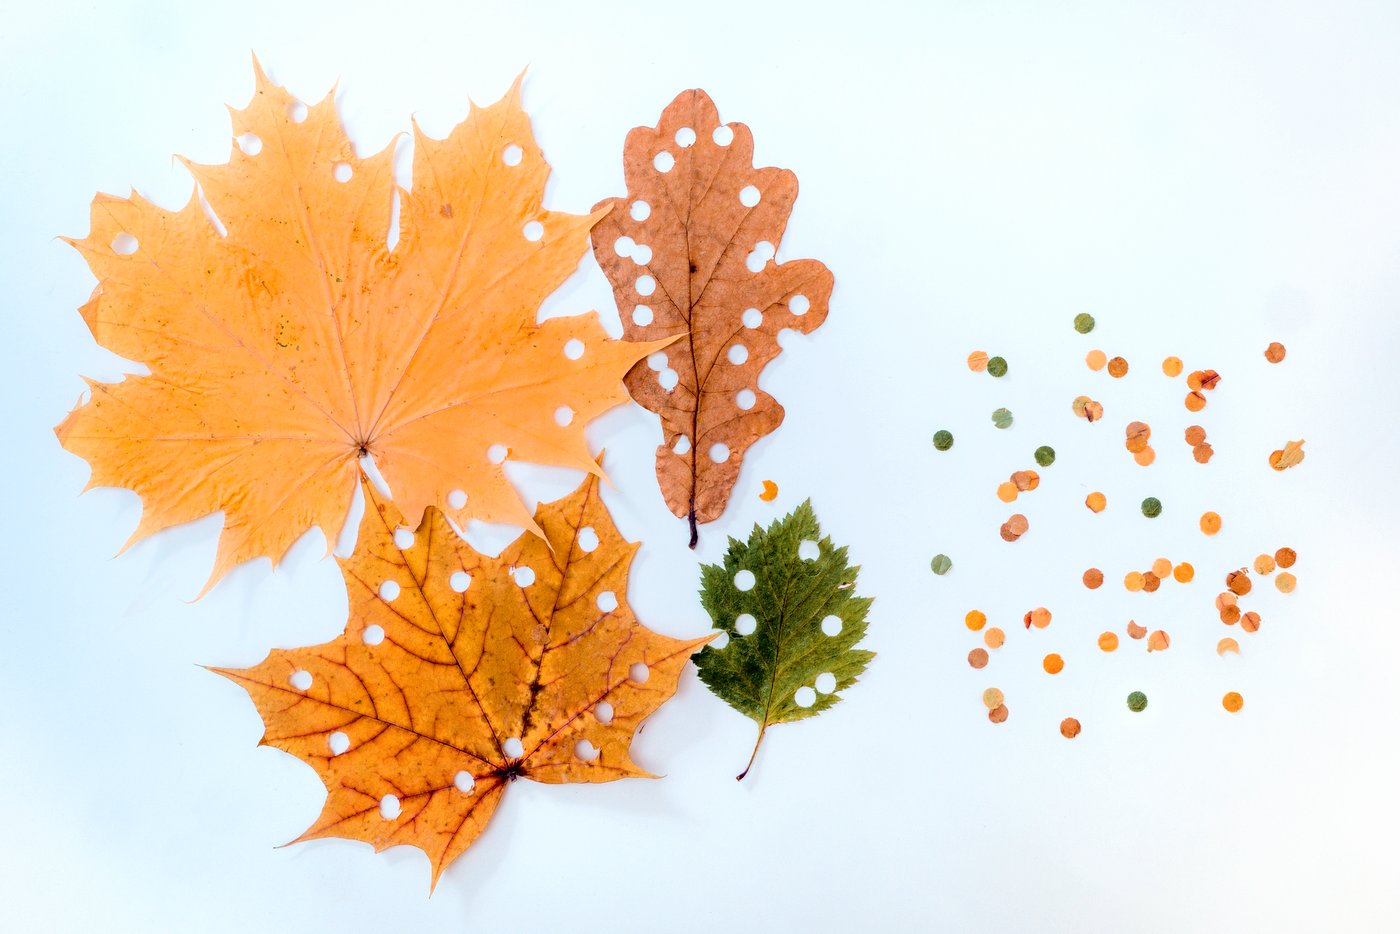 DIY craft projects with dried leaves - leaf confetti Photo by kramyninasvetlana via Twenty20